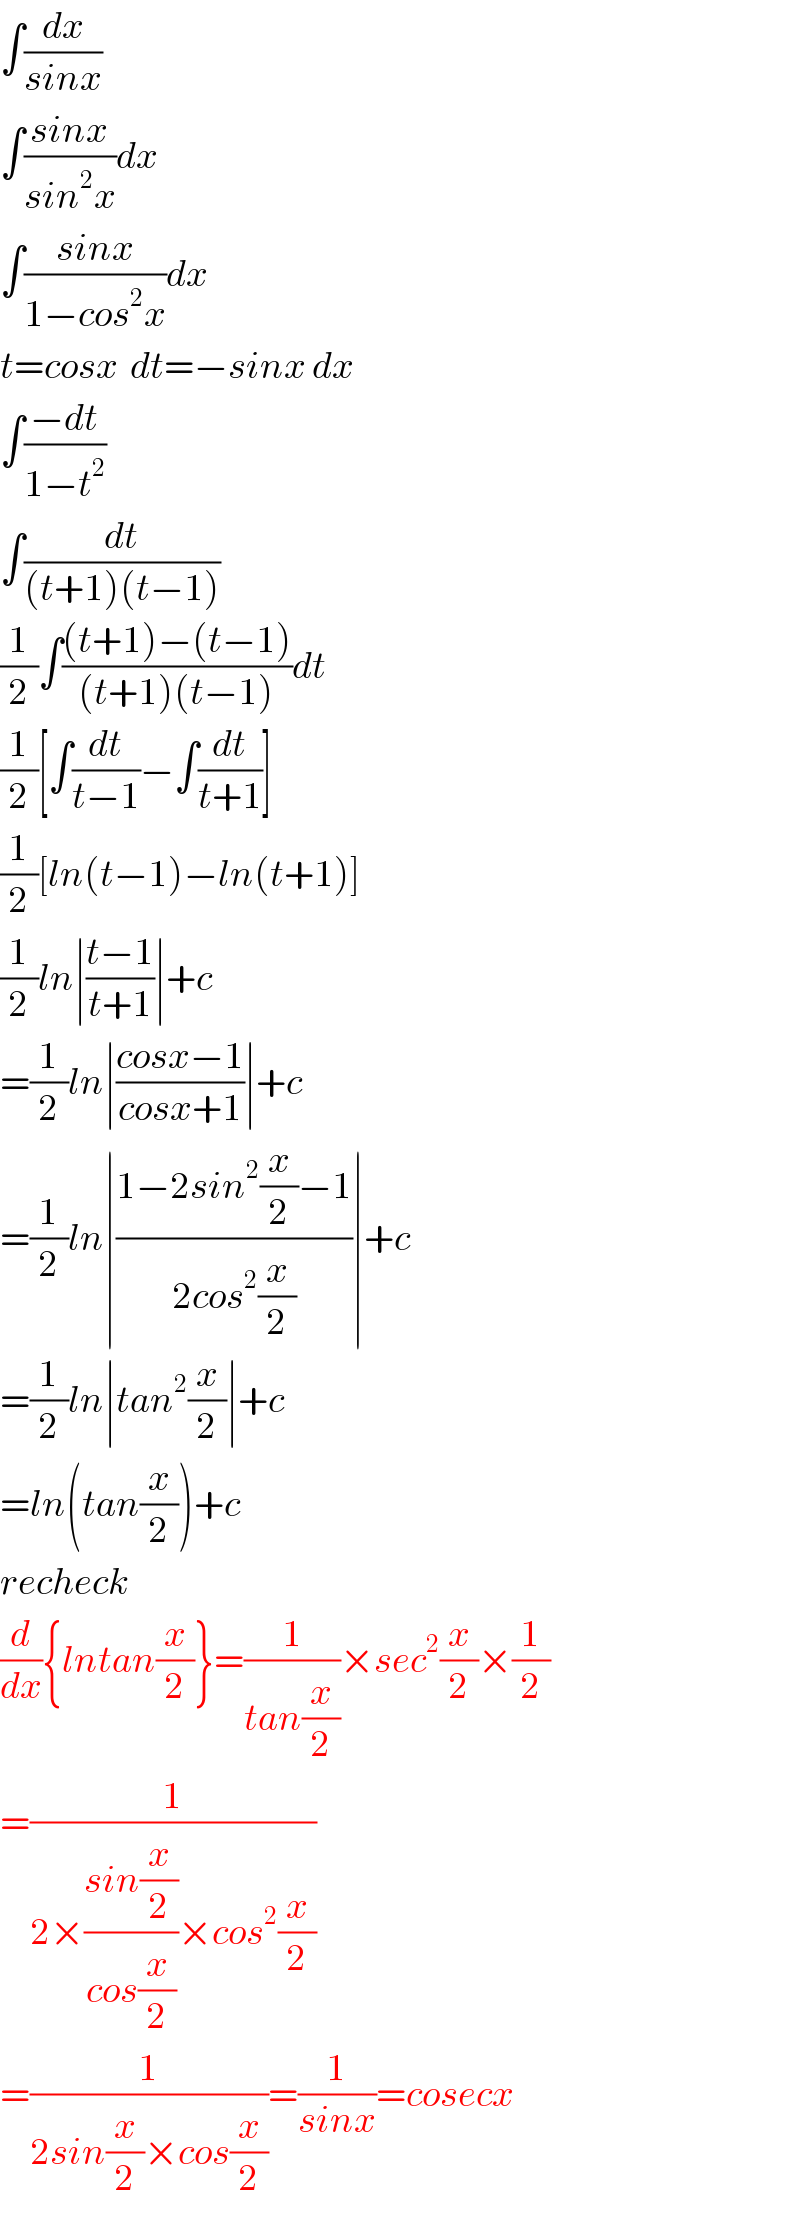 ∫(dx/(sinx))  ∫((sinx)/(sin^2 x))dx  ∫((sinx)/(1−cos^2 x))dx  t=cosx  dt=−sinx dx  ∫((−dt)/(1−t^2 ))  ∫(dt/((t+1)(t−1)))  (1/2)∫(((t+1)−(t−1))/((t+1)(t−1)))dt  (1/2)[∫(dt/(t−1))−∫(dt/(t+1))]  (1/2)[ln(t−1)−ln(t+1)]  (1/2)ln∣((t−1)/(t+1))∣+c  =(1/2)ln∣((cosx−1)/(cosx+1))∣+c  =(1/2)ln∣((1−2sin^2 (x/2)−1)/(2cos^2 (x/2)))∣+c  =(1/2)ln∣tan^2 (x/2)∣+c  =ln(tan(x/2))+c  recheck  (d/dx){lntan(x/2)}=(1/(tan(x/2)))×sec^2 (x/2)×(1/2)  =(1/(2×((sin(x/2))/(cos(x/2)))×cos^2 (x/2)))  =(1/(2sin(x/2)×cos(x/2)))=(1/(sinx))=cosecx  